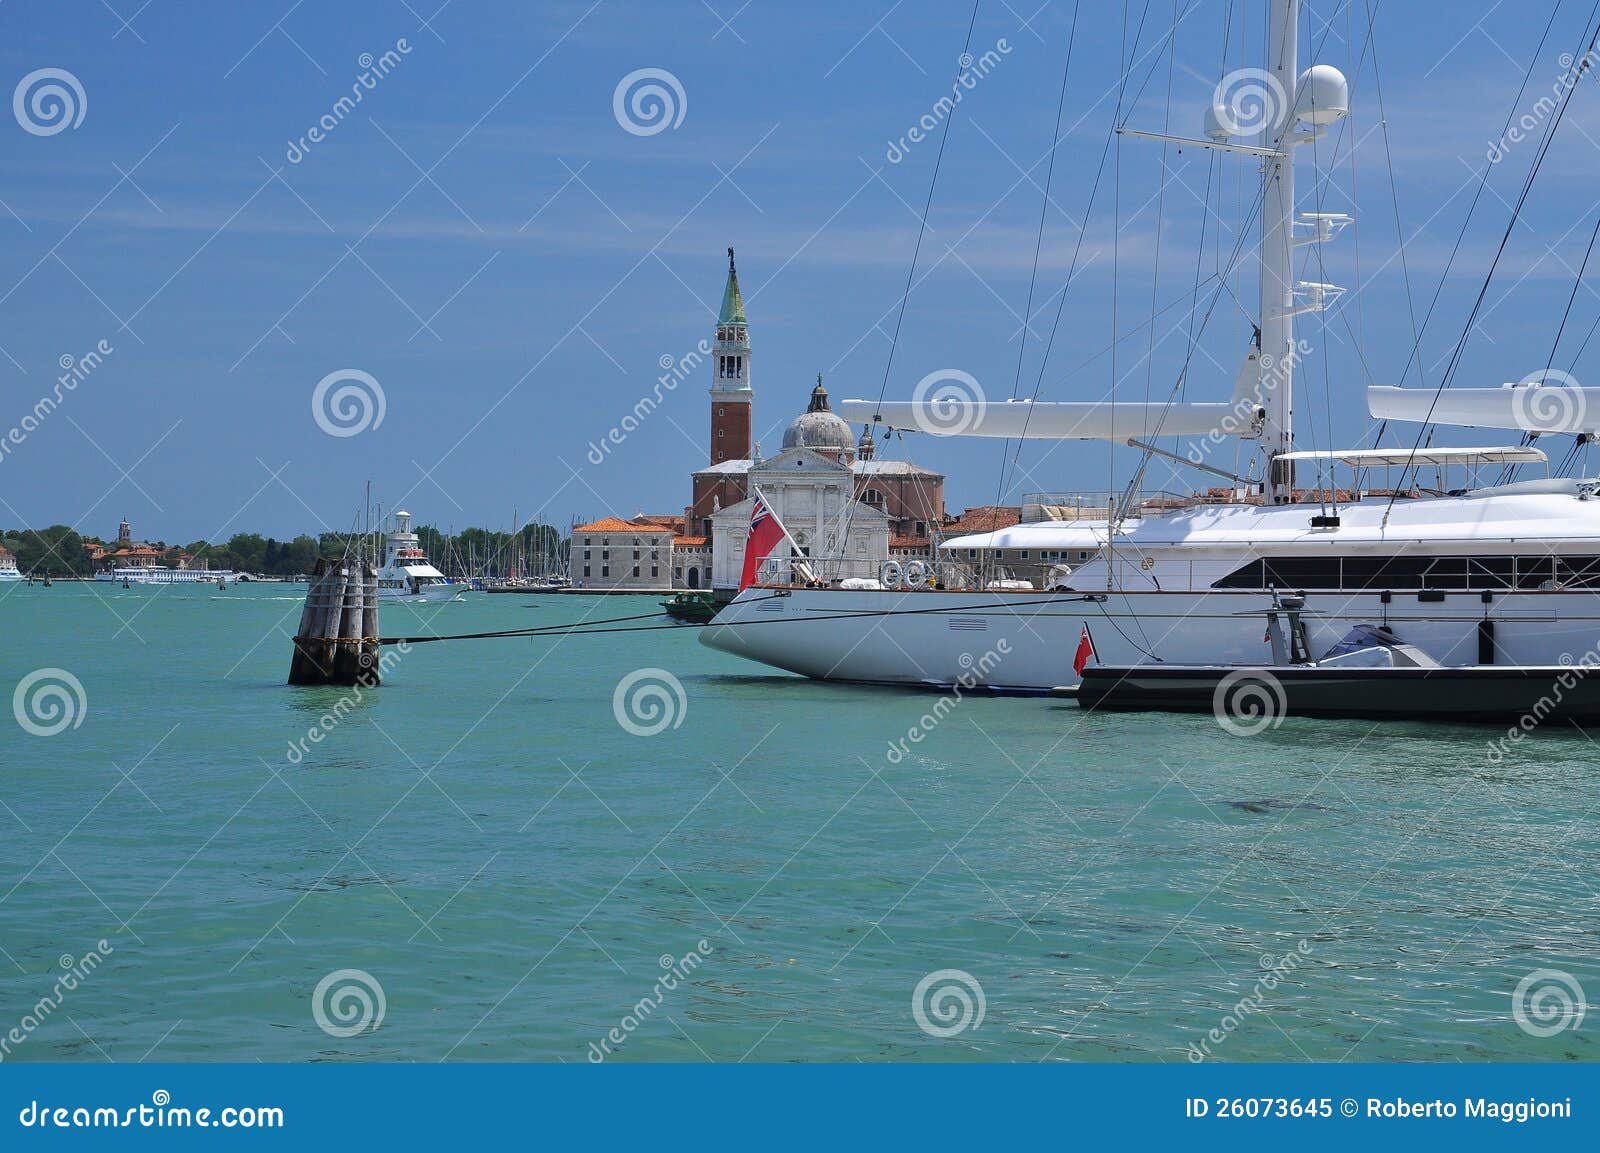 Sail boat in front of the San Giorgio church, Giudecca canal, Venice 